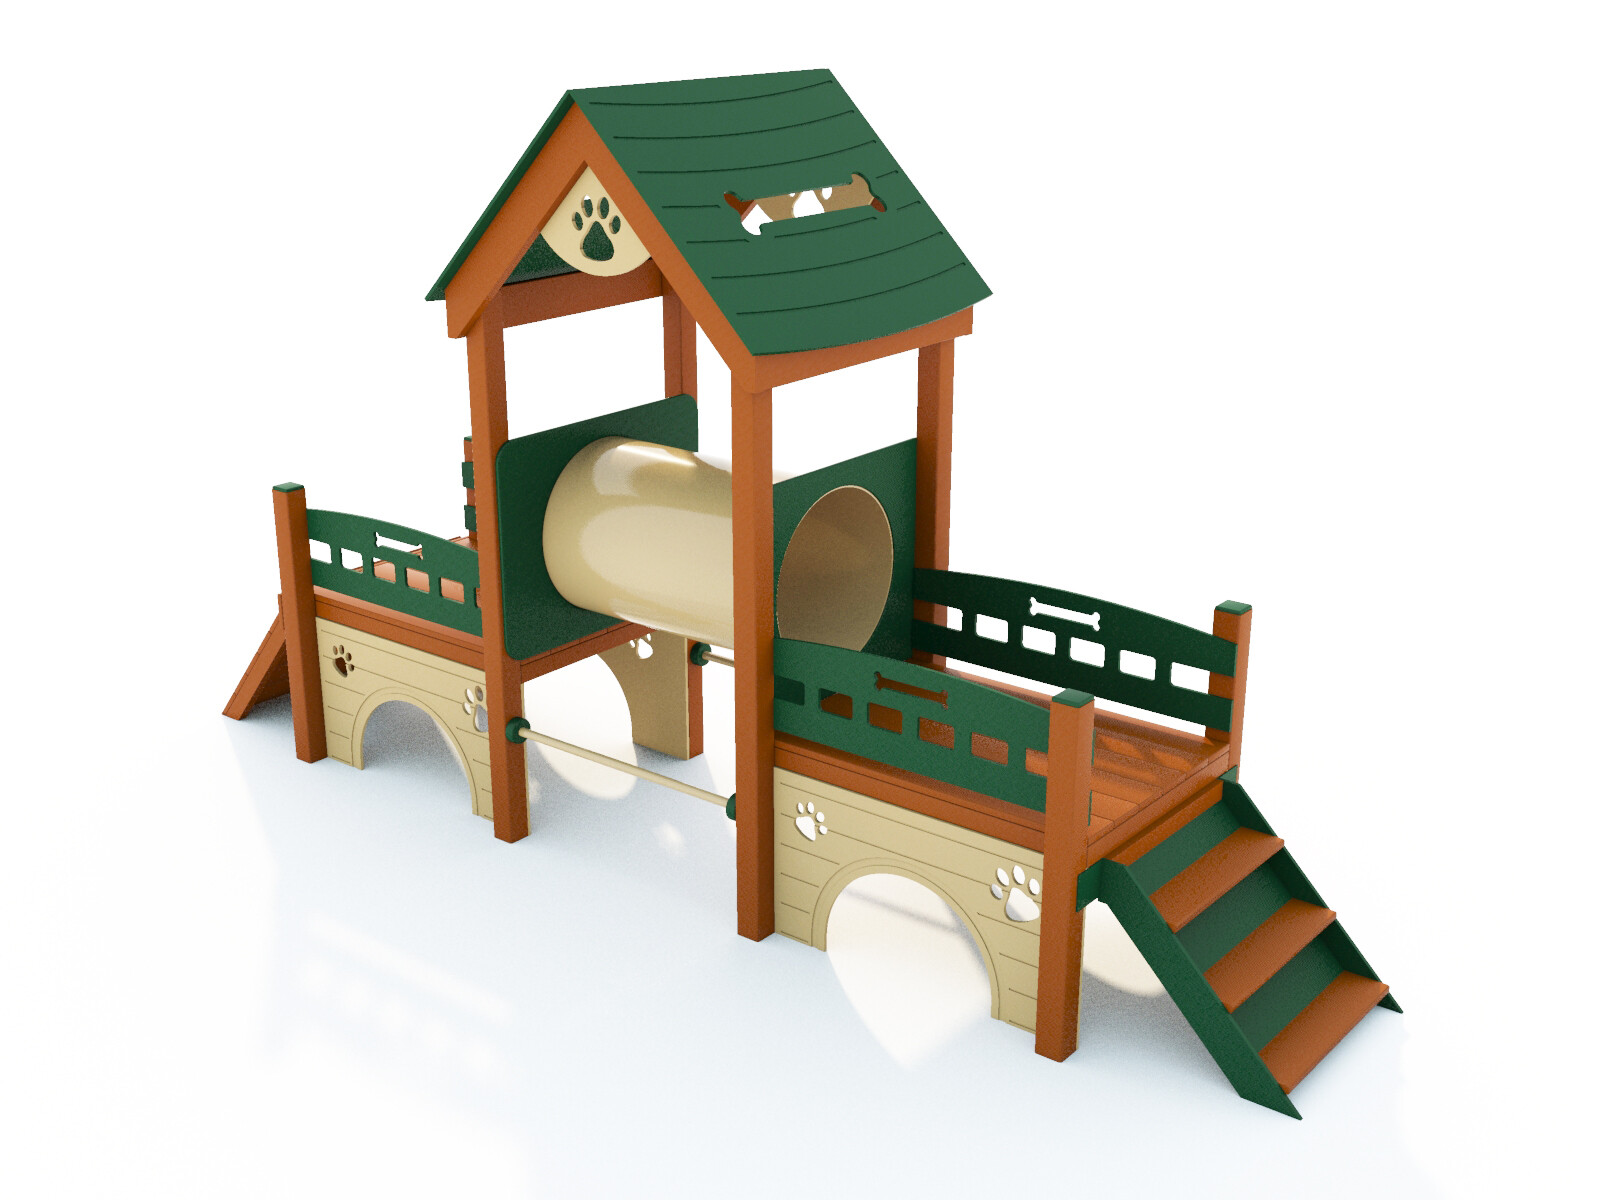 dog playground equipment